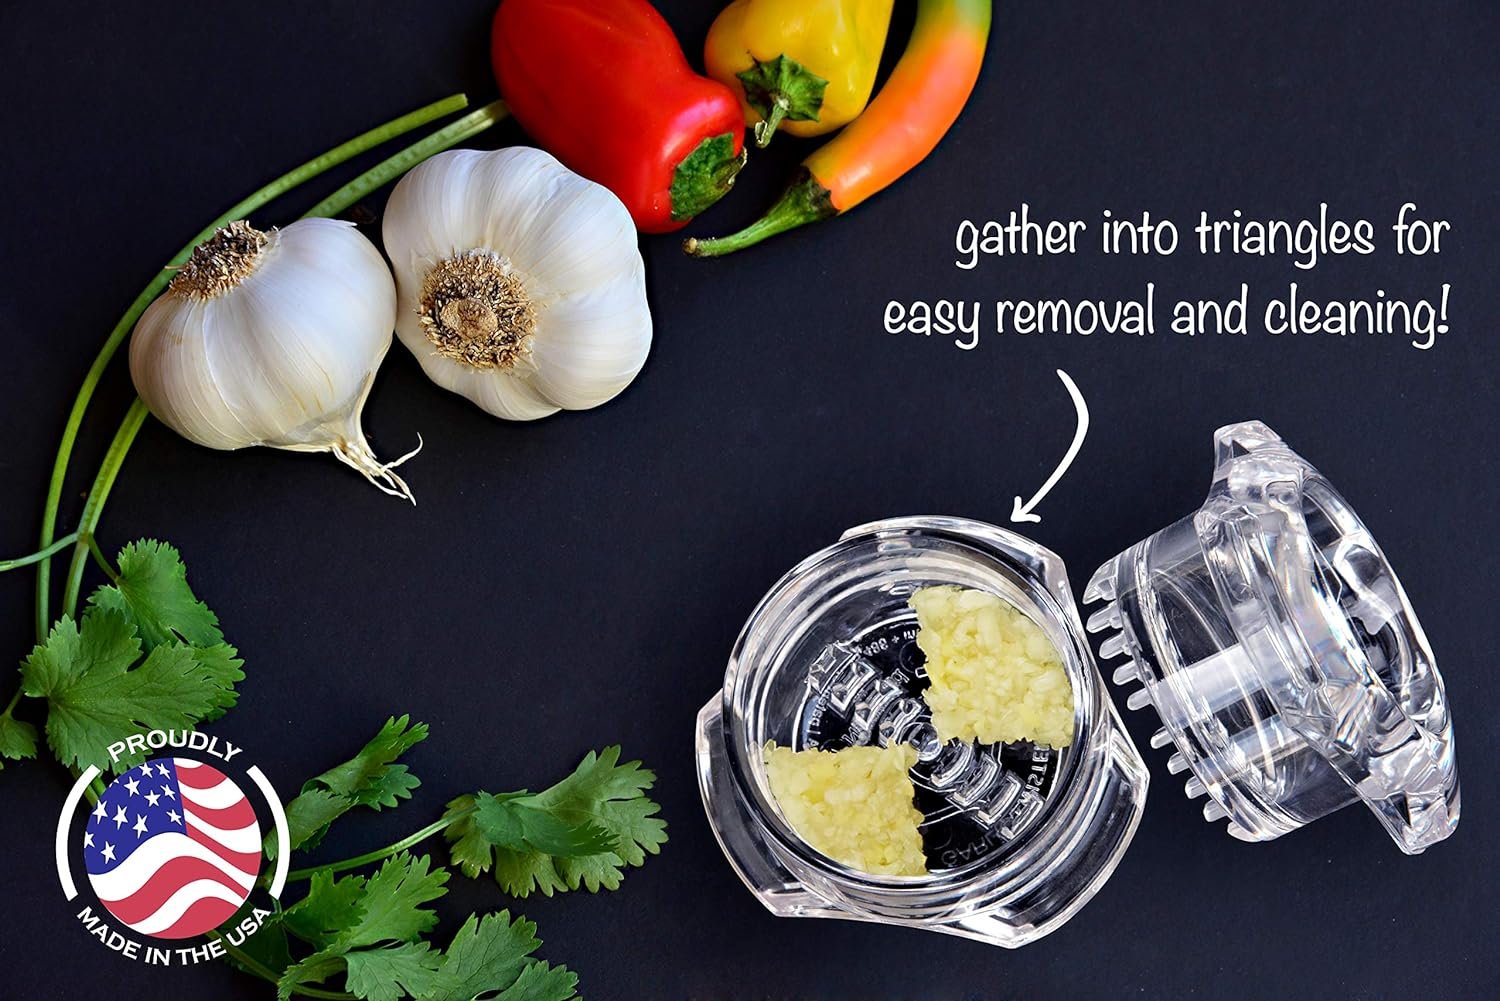 NexTrend Garlic Twister 4th Gen - Multifunctional Garlic/Ginger/Herb/Nuts, Garlic Press Kitchen Mincer and Grinder, Easy to Clean! (Green)